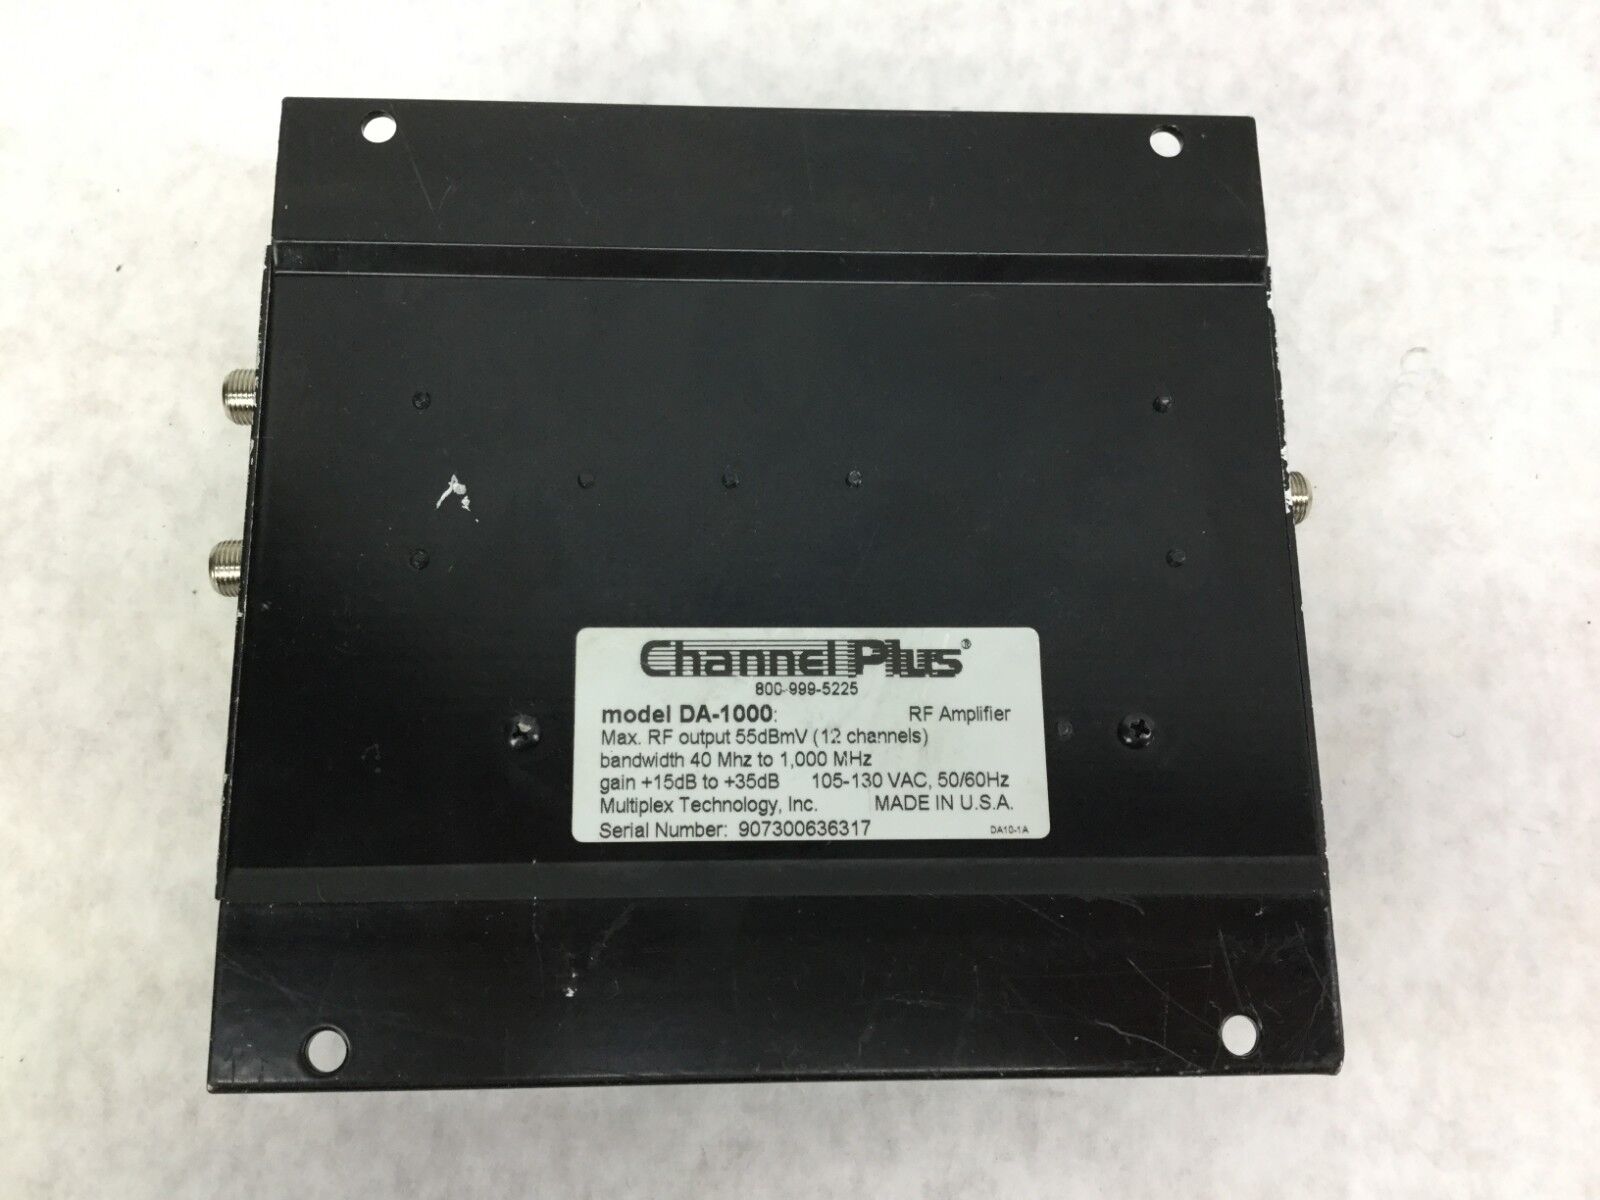 Channel Plus RF Amplifier  Broadband/ CATV Amplifier  DA-1000  Untested